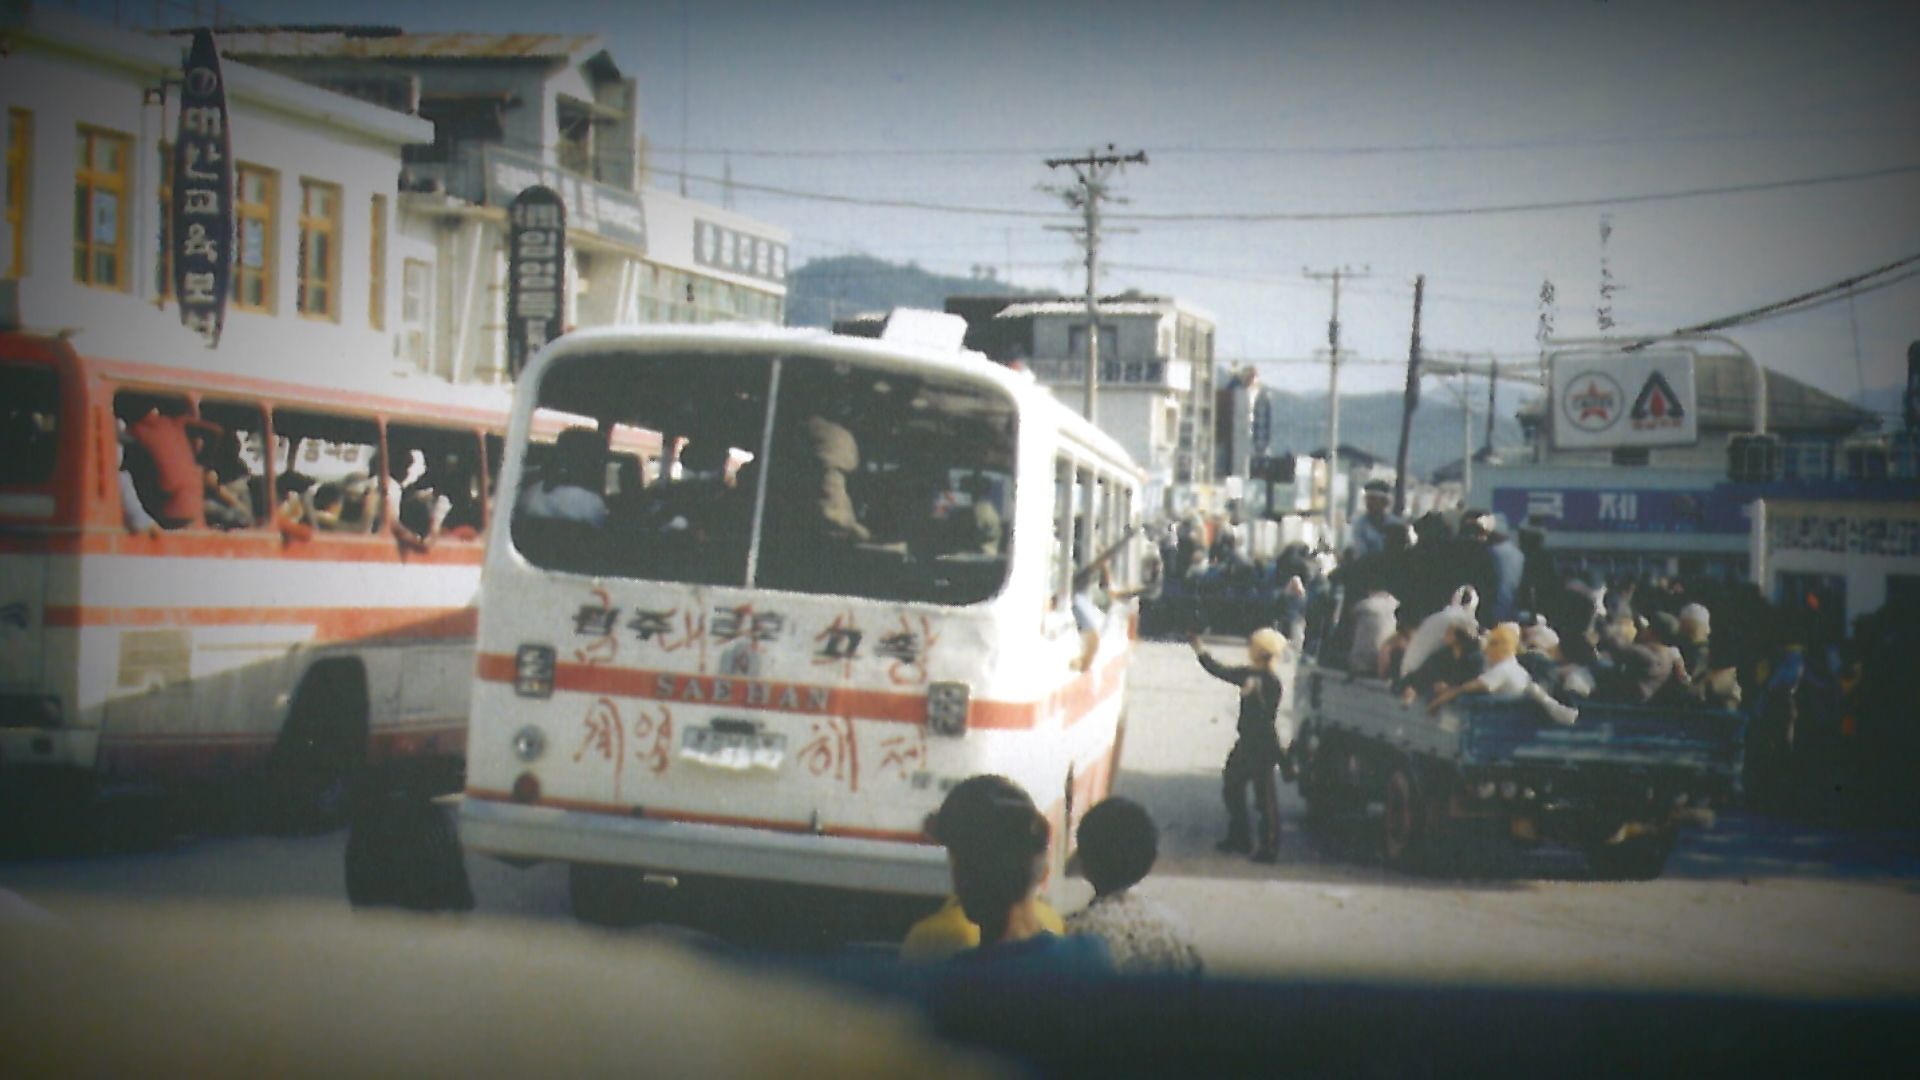 광주에서 온 시민군들과 지역민들이 합세해 진도, 목포, 완도 등 인근 지역으로 떠나고 있다. (1980년 5월 21일 당시)